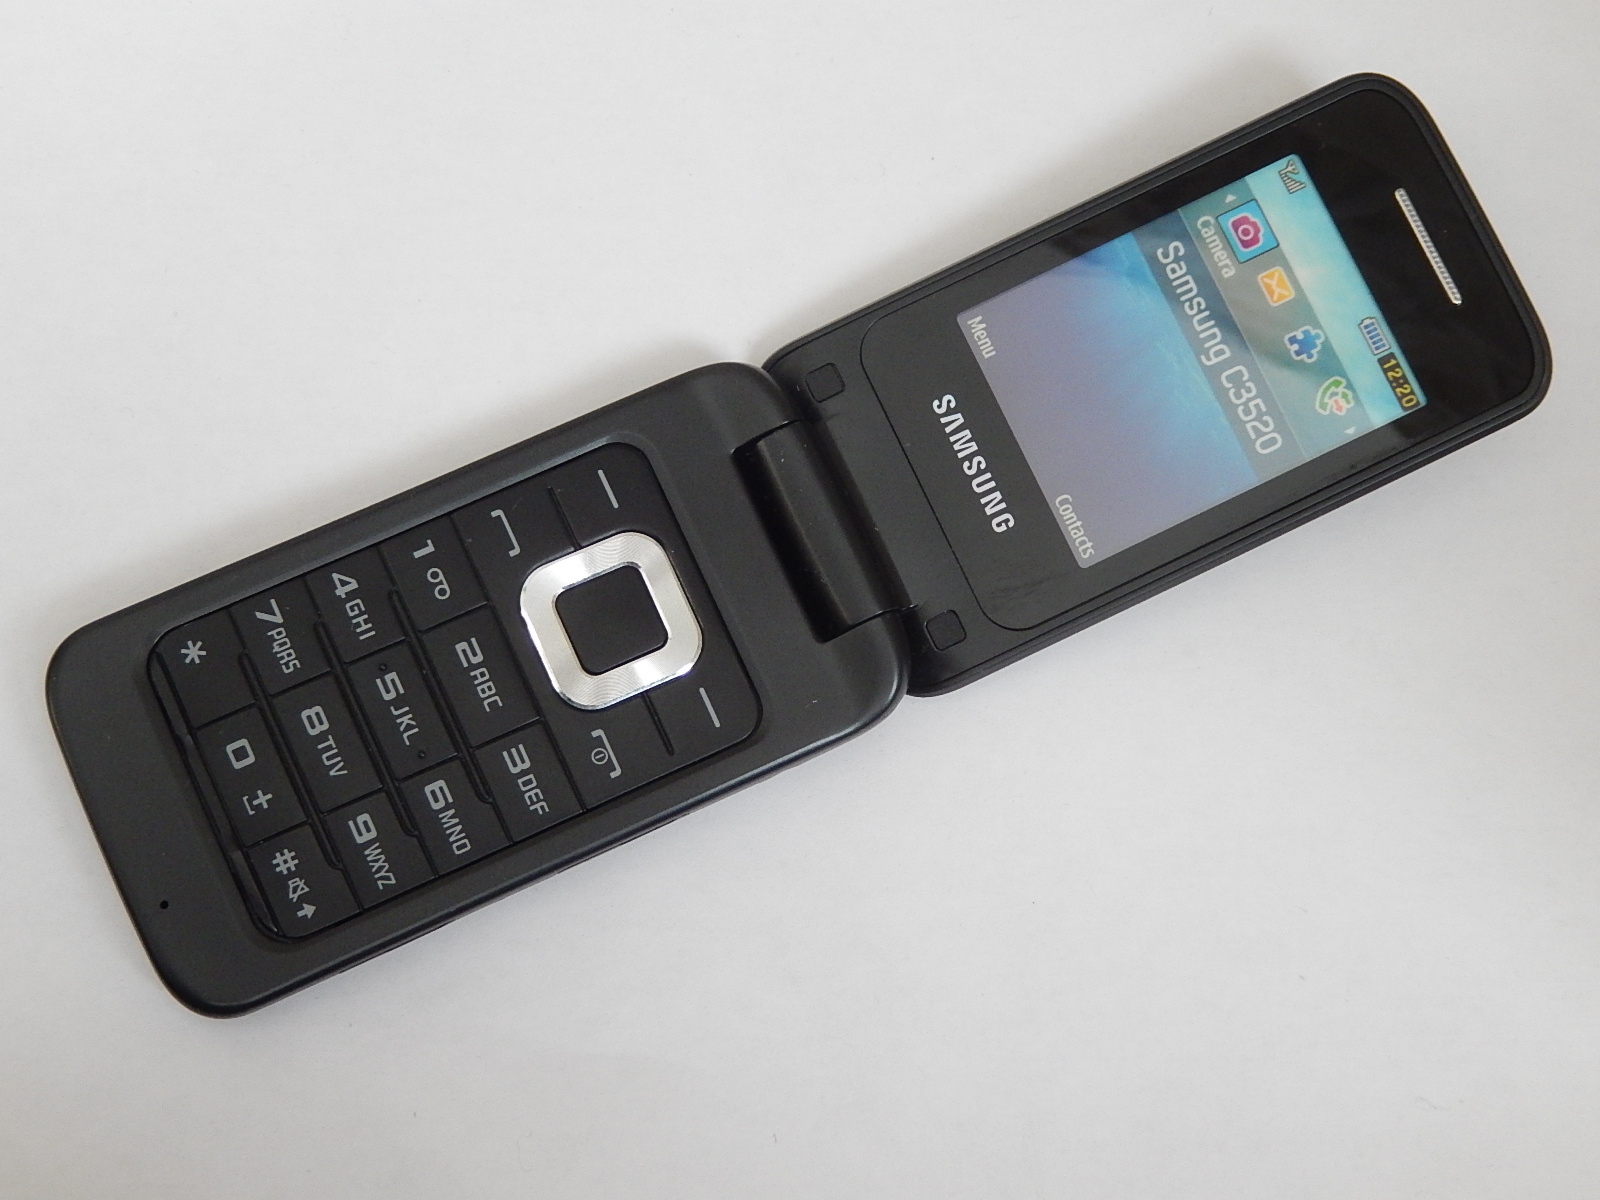 Samsung Omnia Réplique Téléphone Factice / Téléphone Jouet (Argent)  (Emballage en Vrac) 